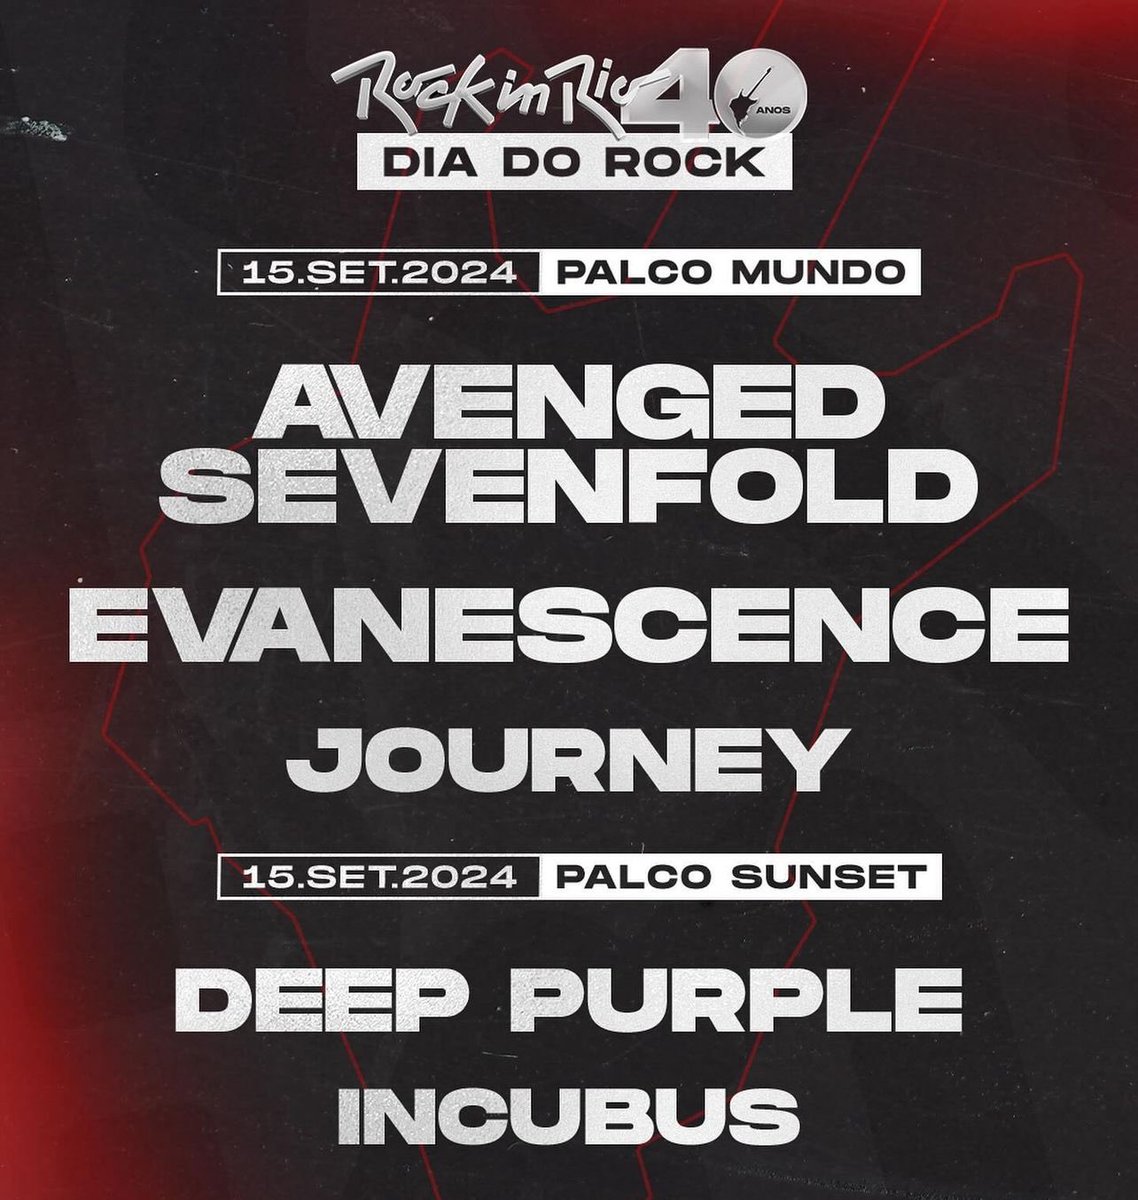 🚨 O dia mais que mais esperávamos chegou!!!!

ROCK IN RIO 

Dia do Rock 15 de setembro de 2024 🤘🏼

#AvengedSevenfold
#Evanescence
#Journey
#DeepPurple
#Incubus